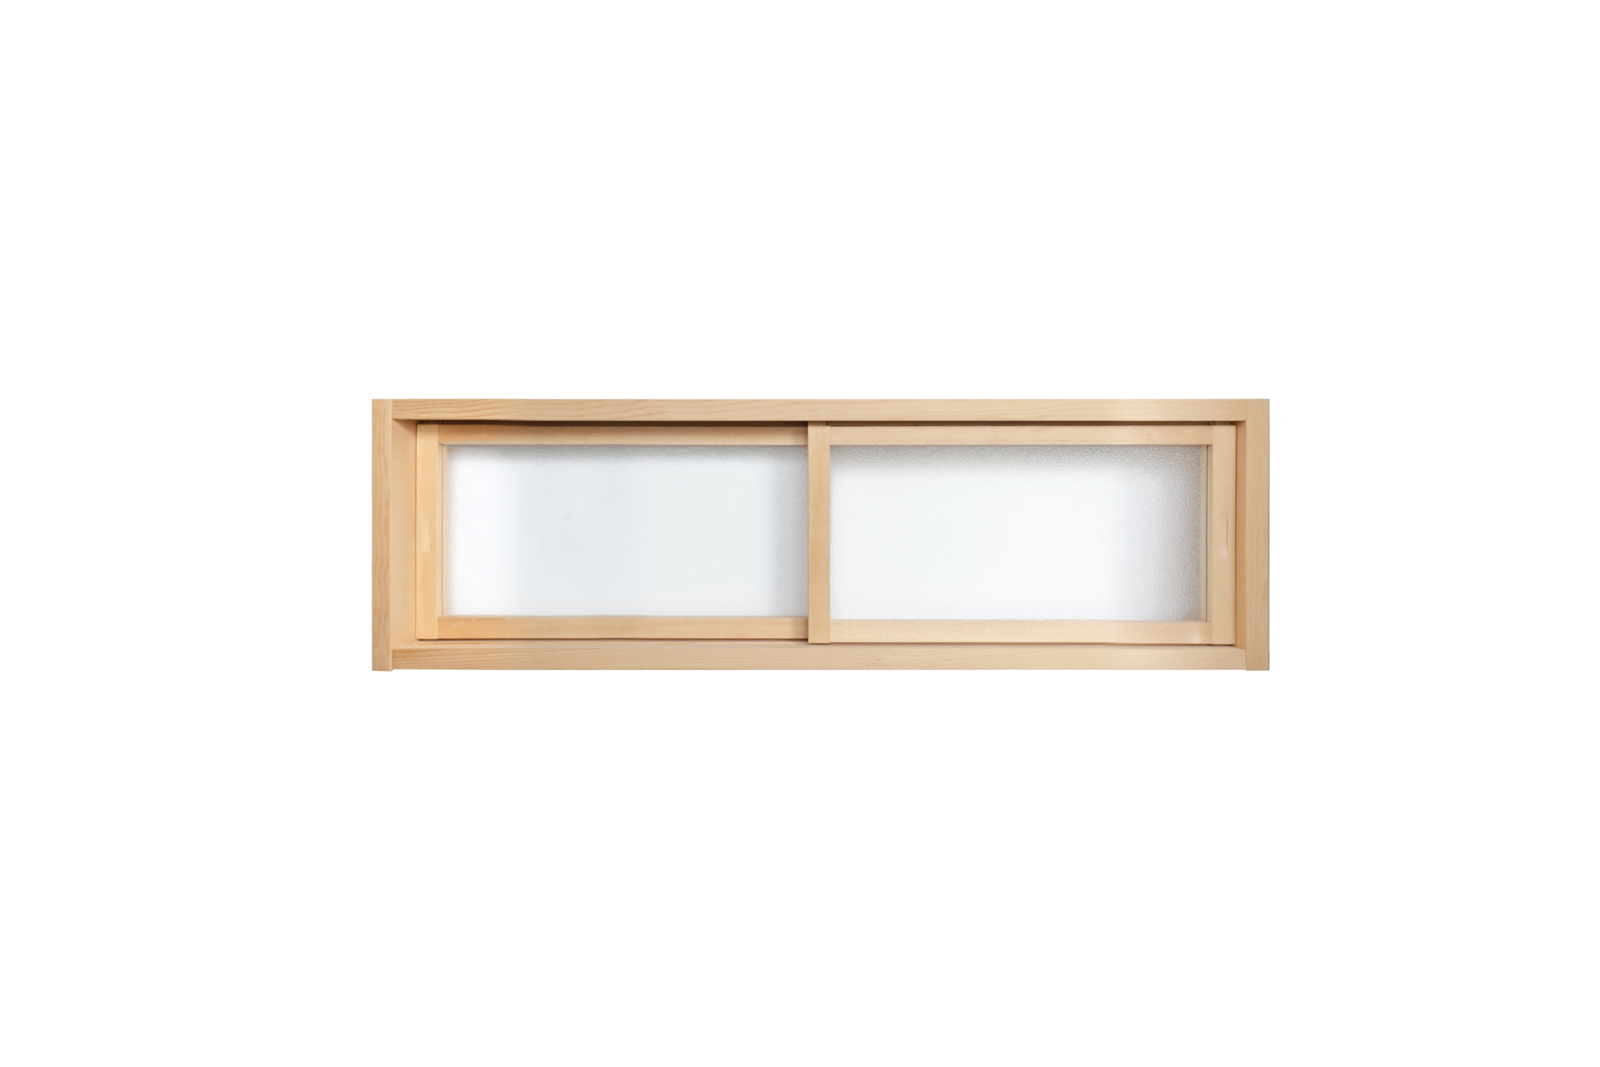 木製室内窓 横長引き違いタイプ サイズオーダー DW-DR008-05-G164 型板ガラス（梨地模様）も選べます